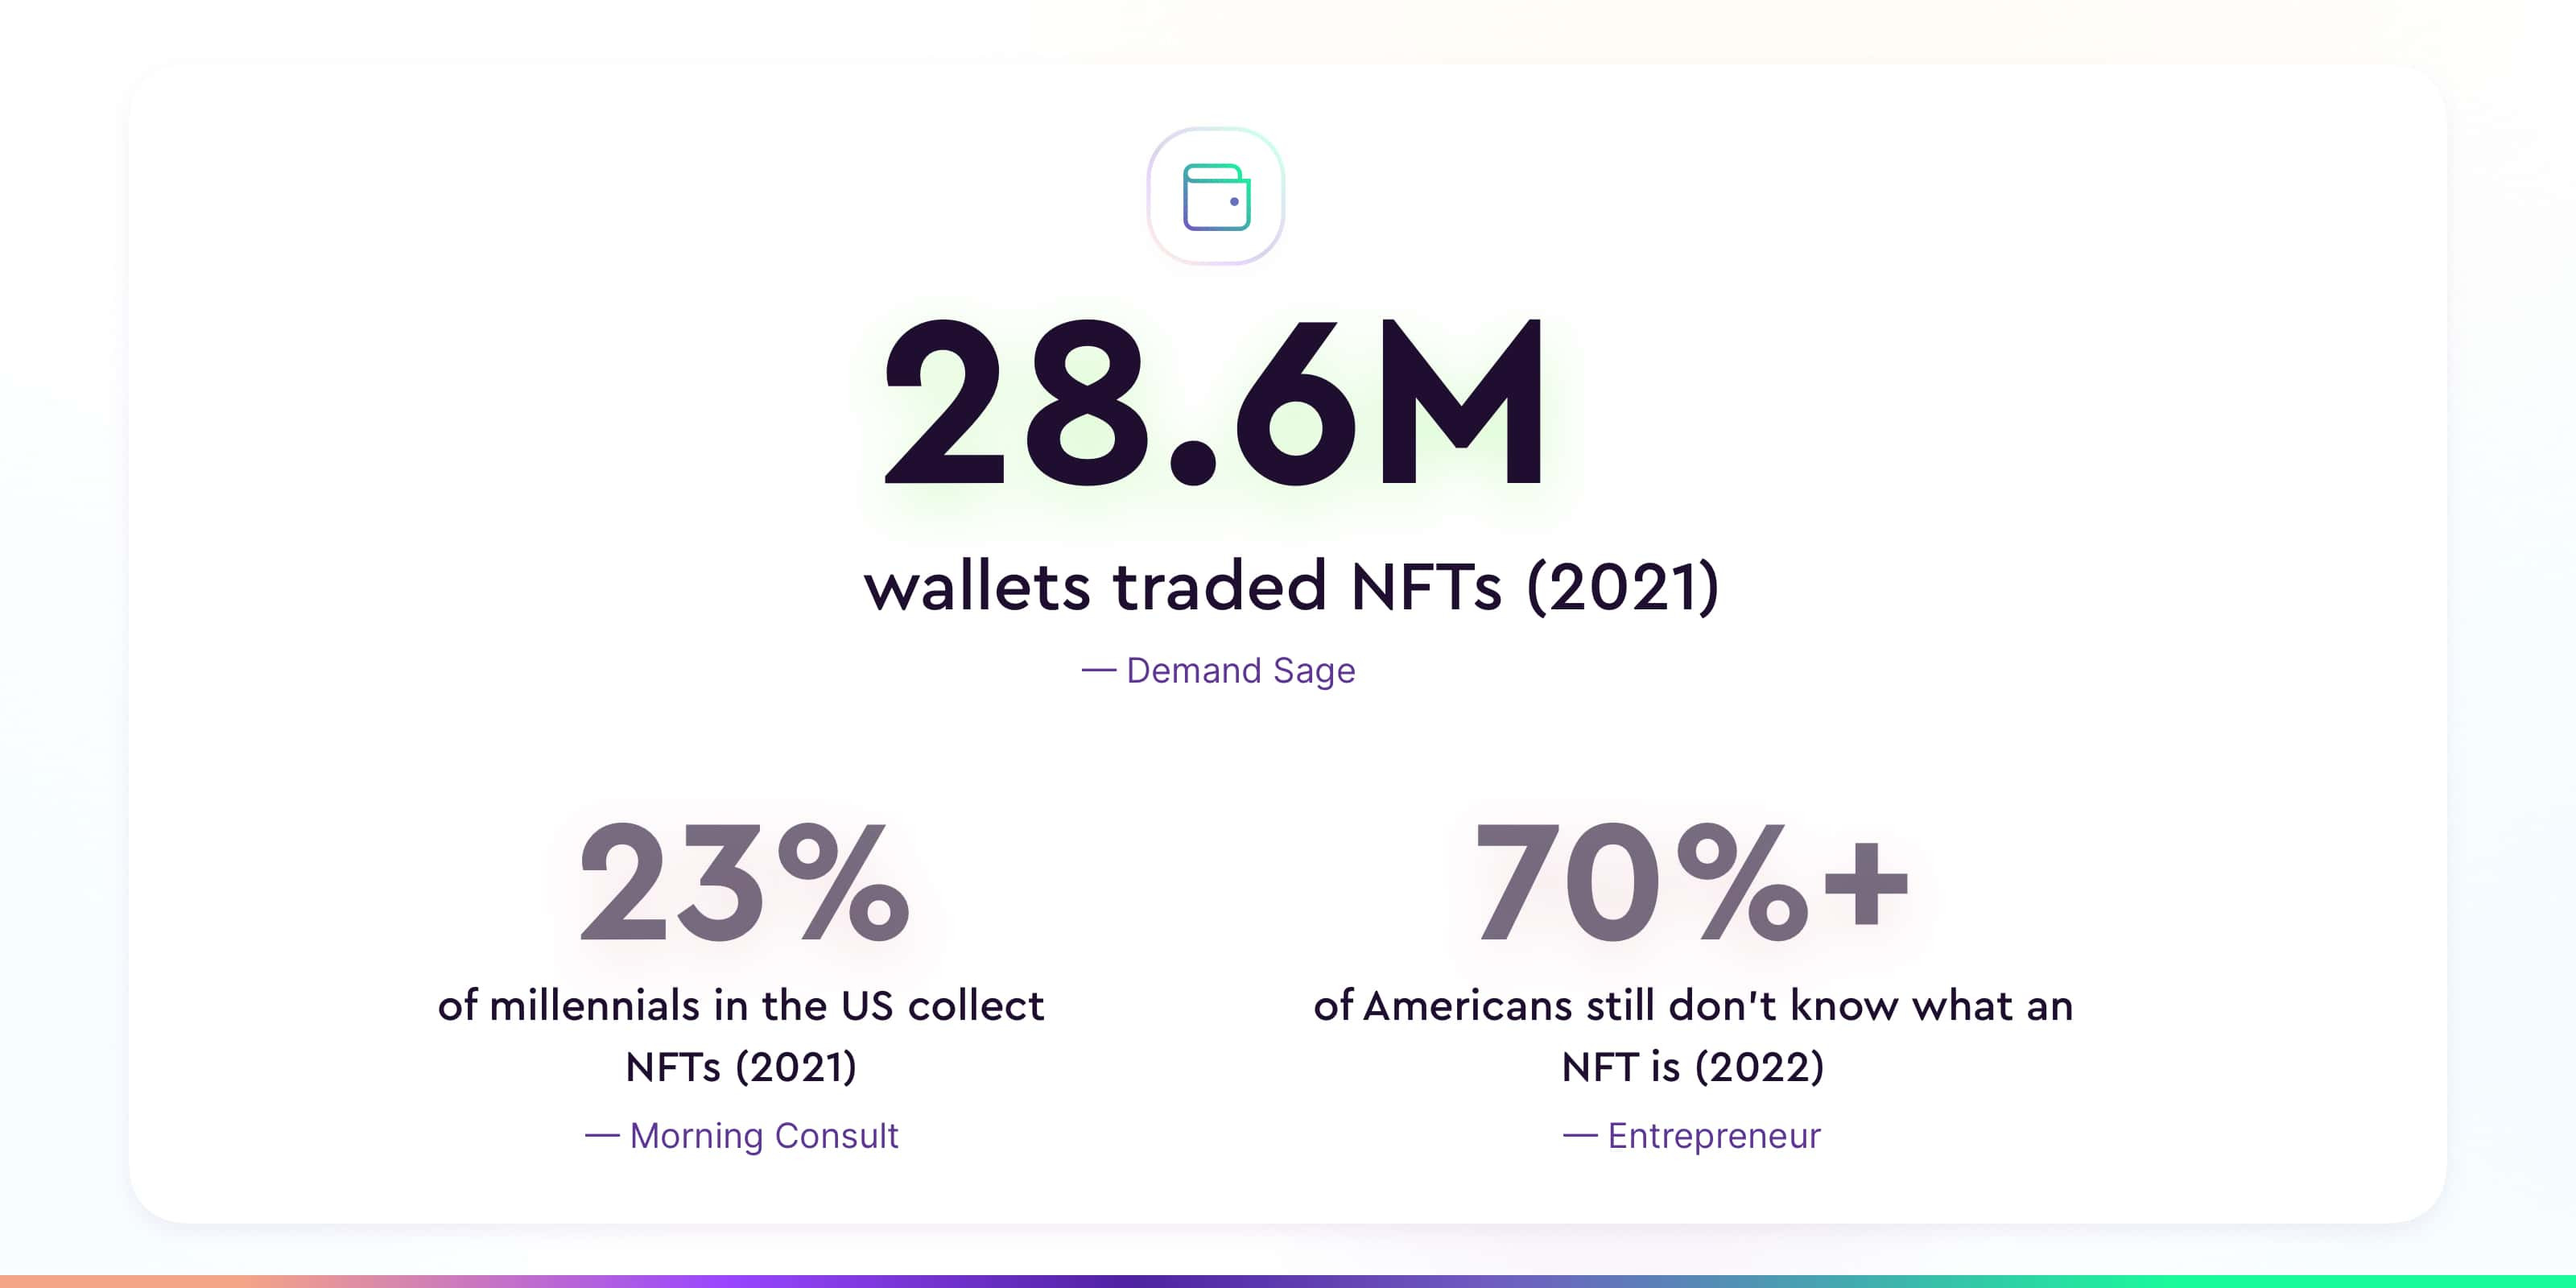 Statistics for NFT token-gating